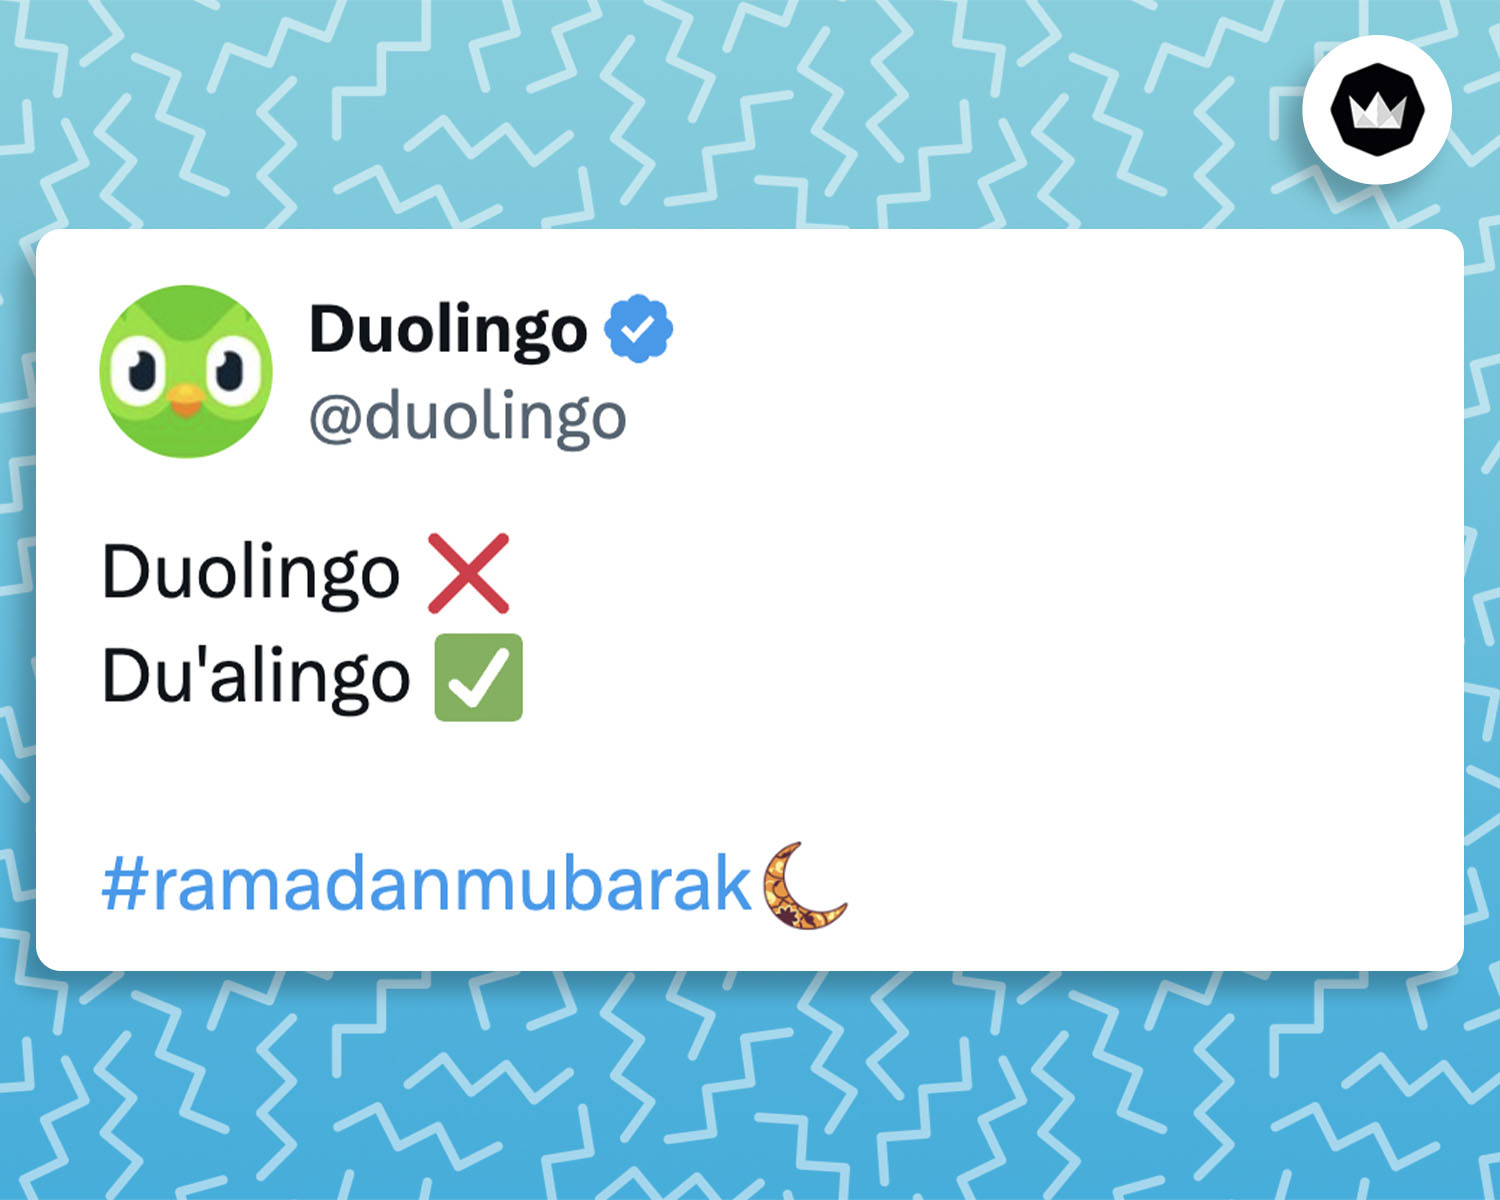 Tweet de Dulingo : 

Duolingo ❌
Du'alingo ✅ 

#ramadanmubarak